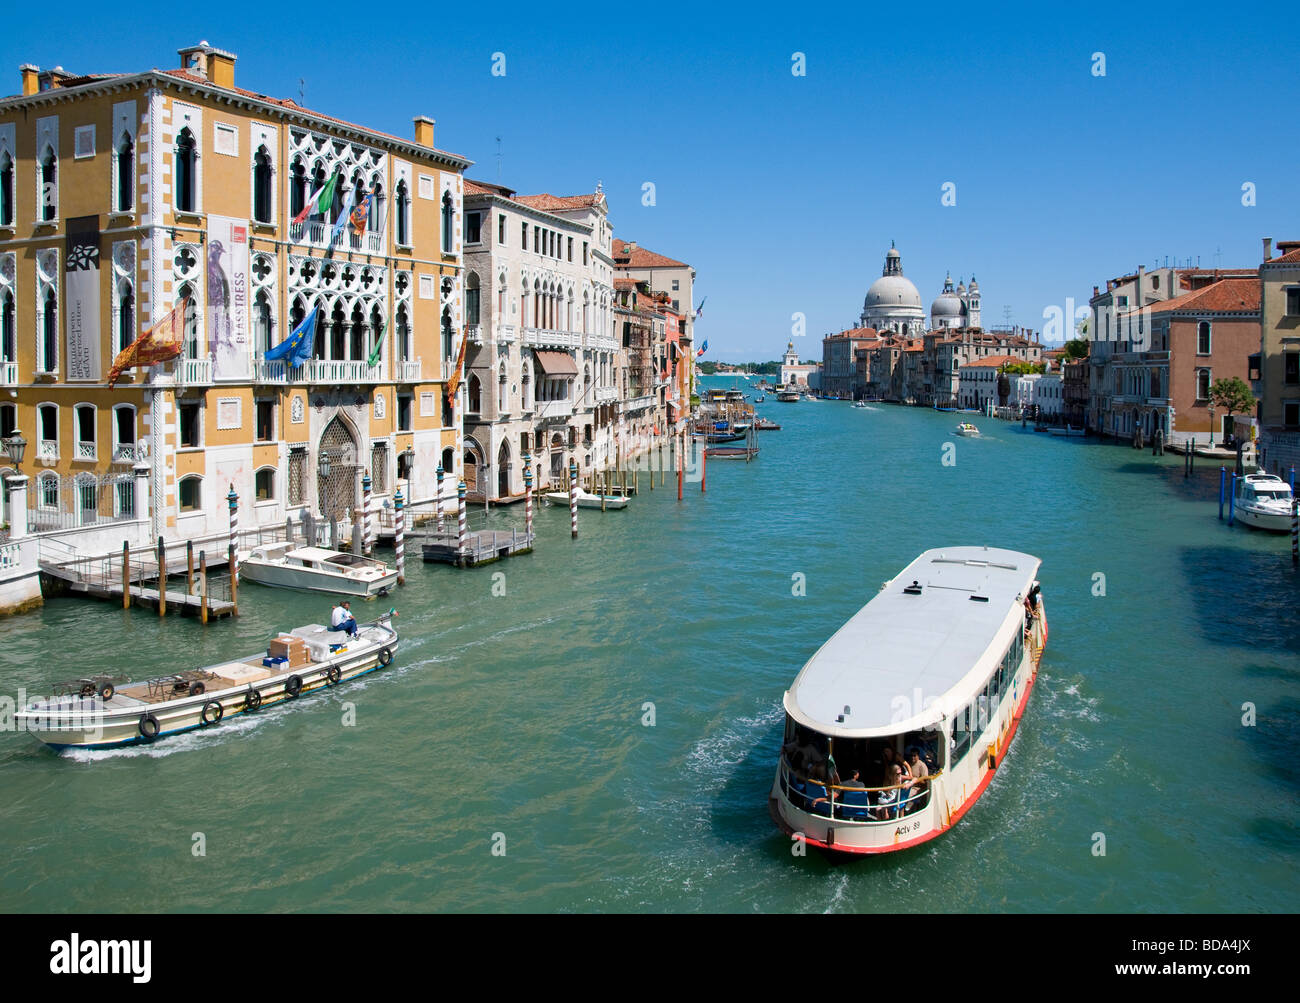 Venice, Veneto, Italy. Church of Santa Maria della Salute and Grand Canal from the Ponte dell'Accademia. Vaporetto / water bus Stock Photo